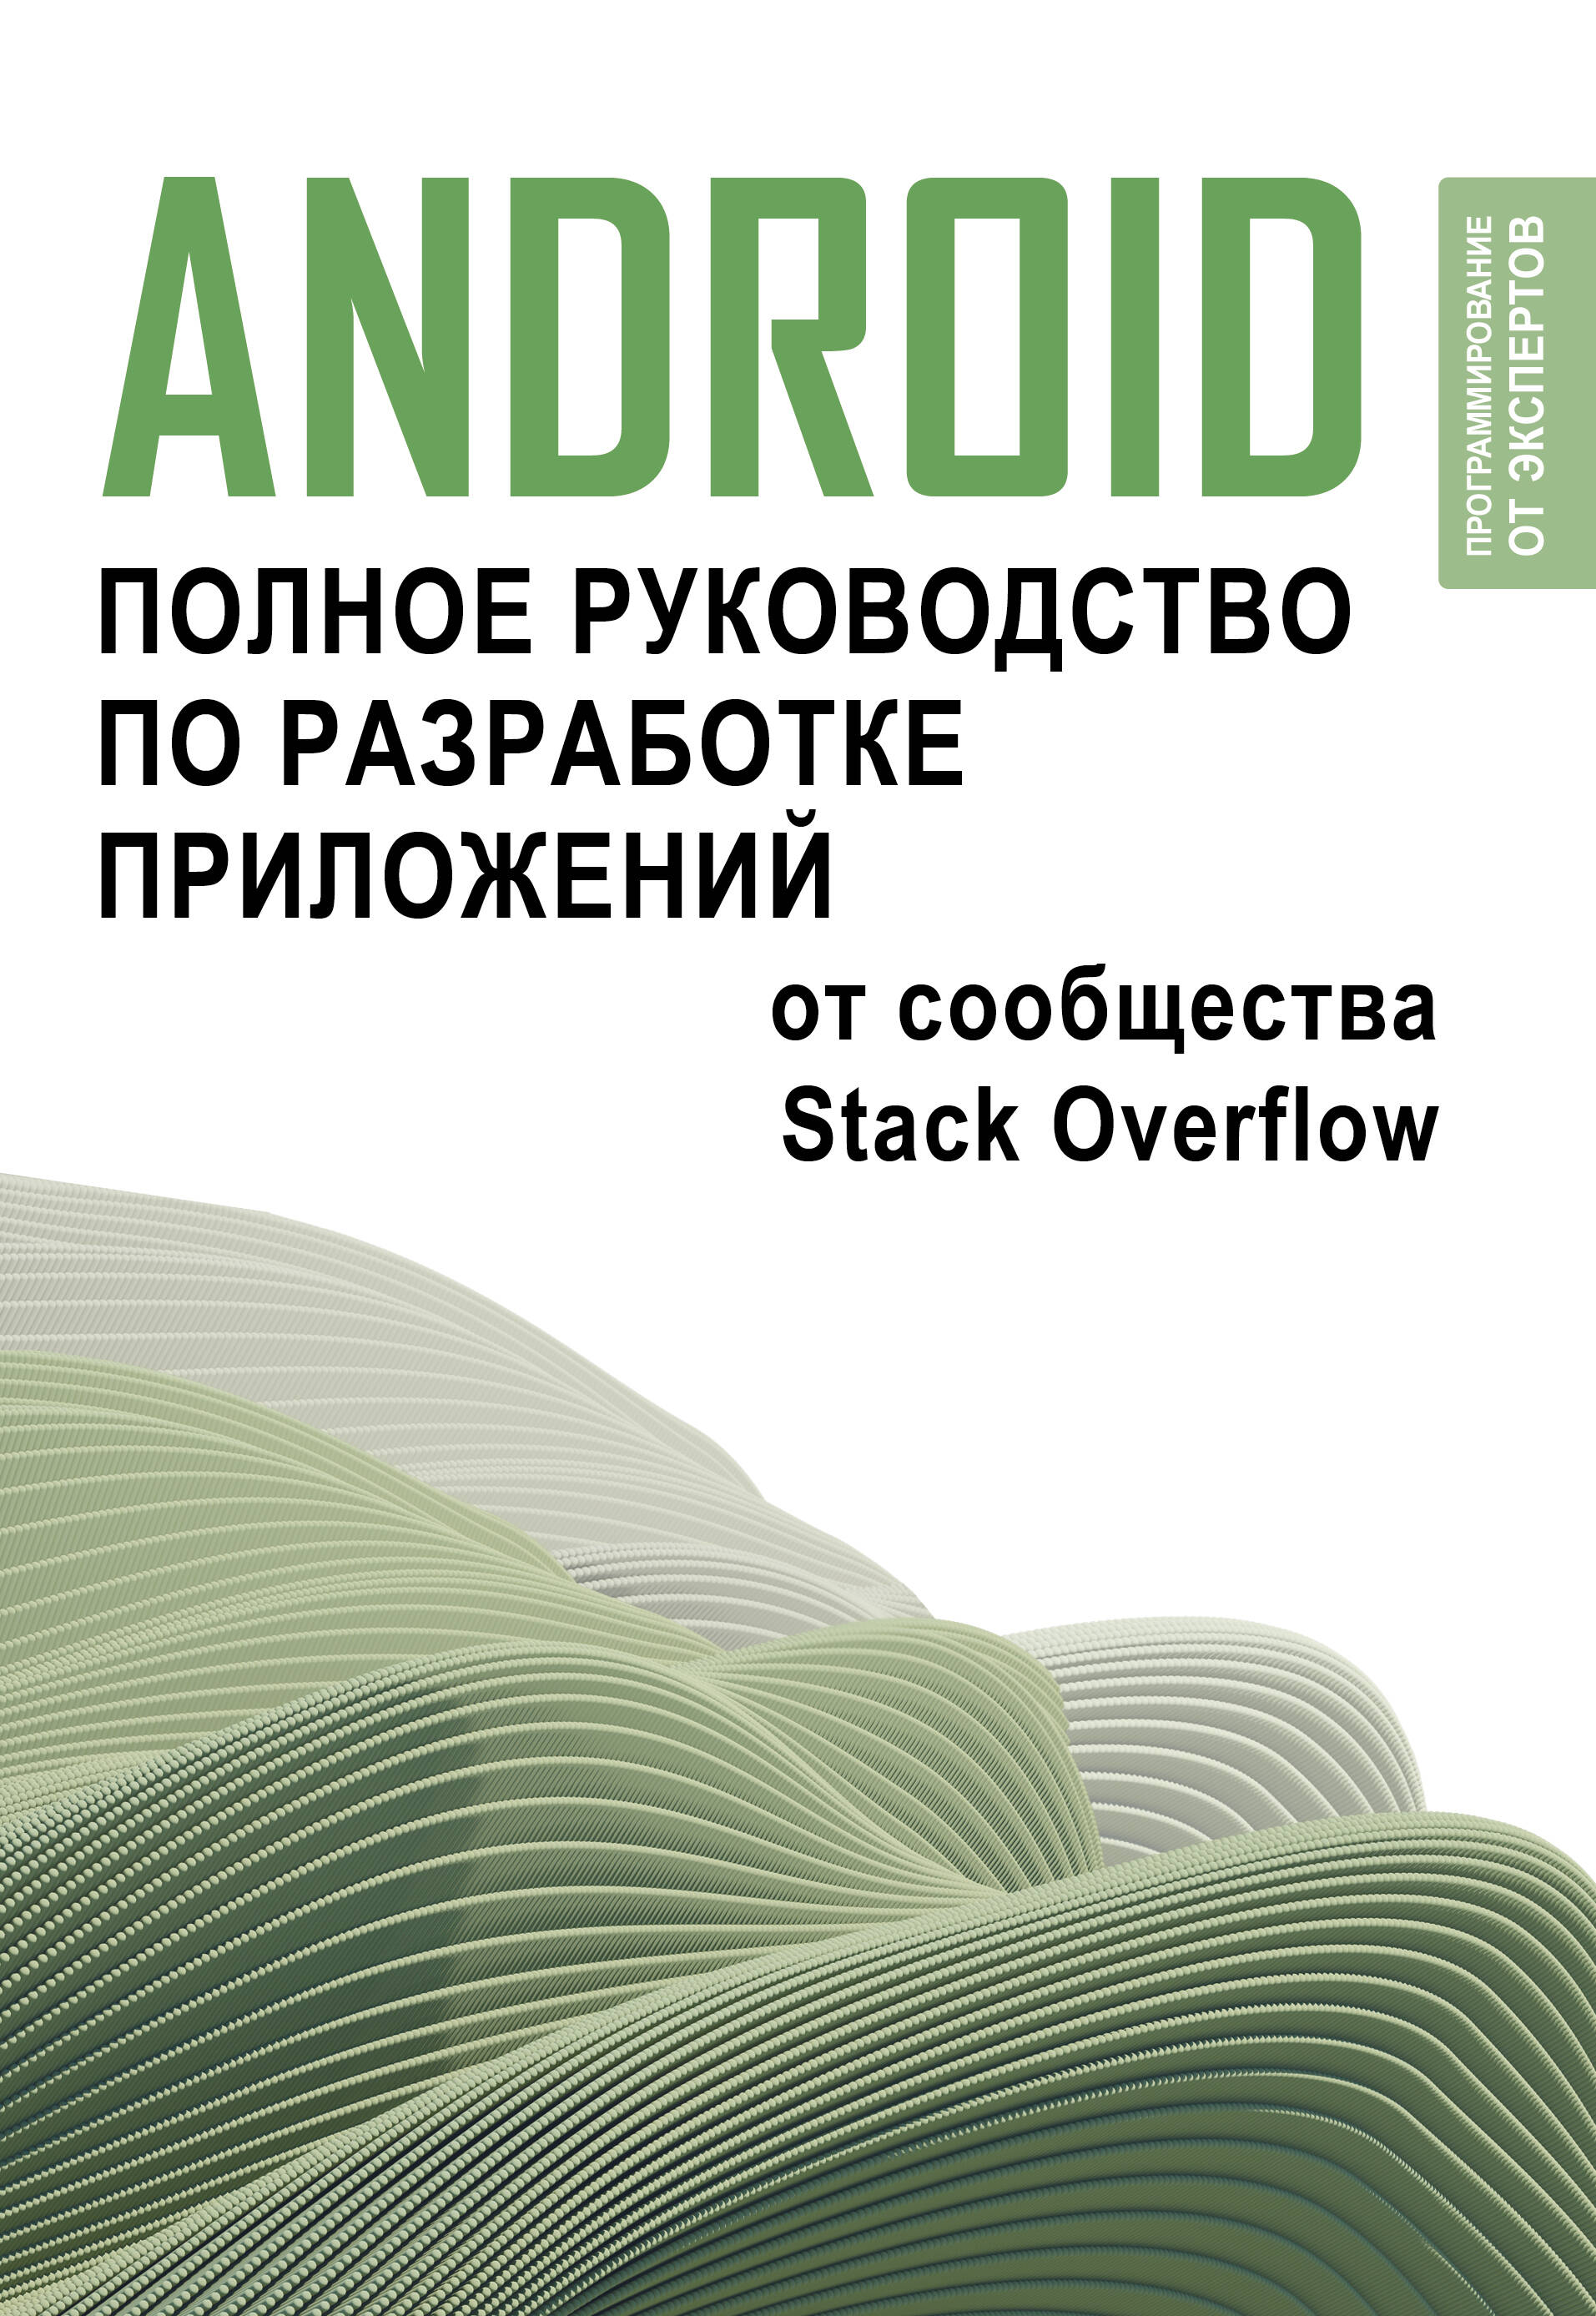 Android. Полное руководство по разработке приложений от сообщества Stack Overflow баланов антон николаевич комплексное руководство по разработке от мобильных приложений до веб технологий учебное пособие